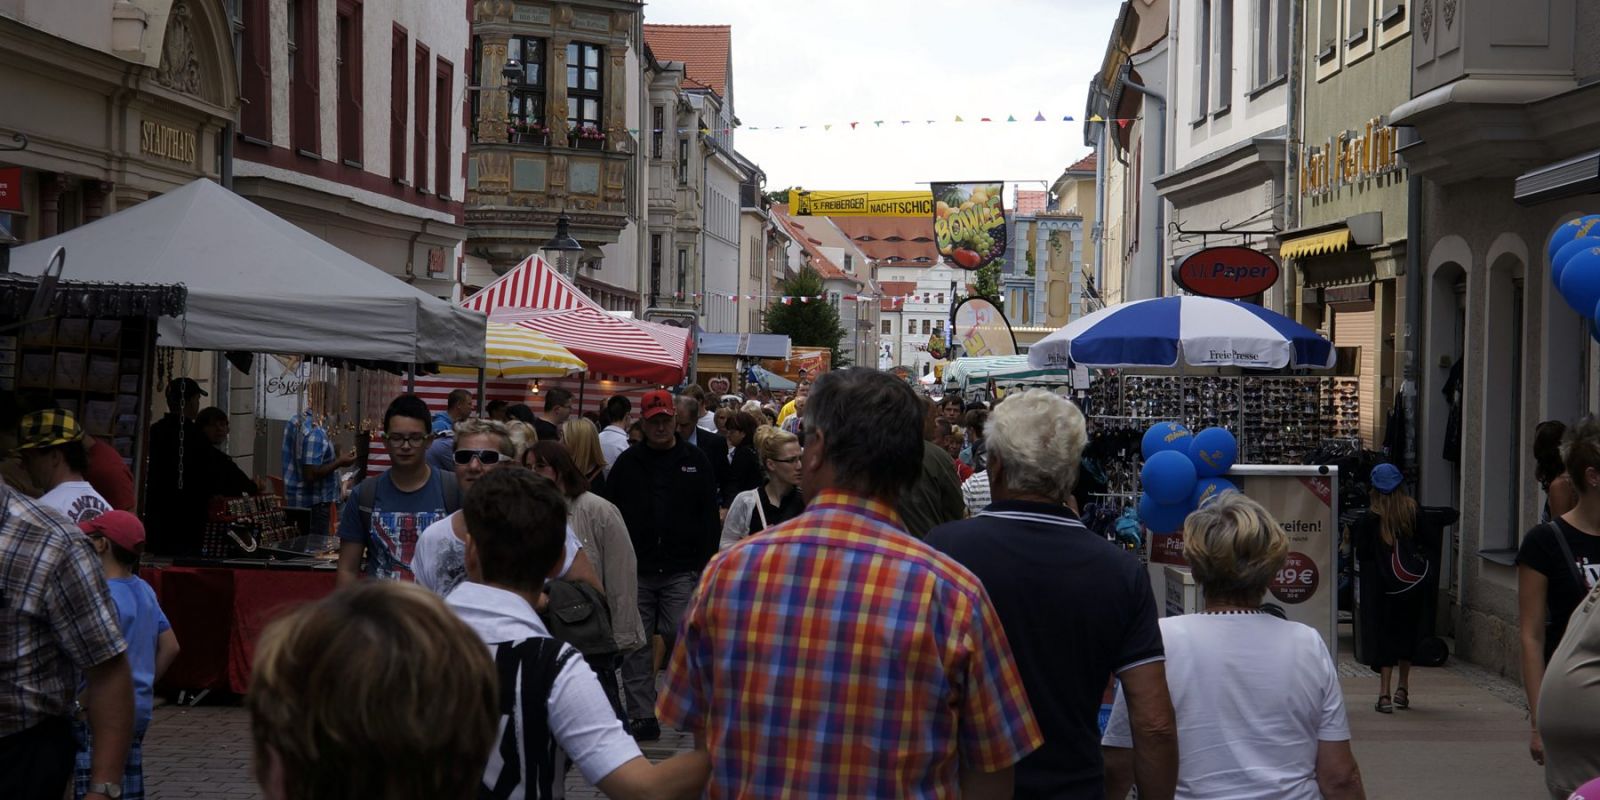 SchÃ¶n geschmÃ¼ckte StraÃen zum Bergstadtfest in Freiberg